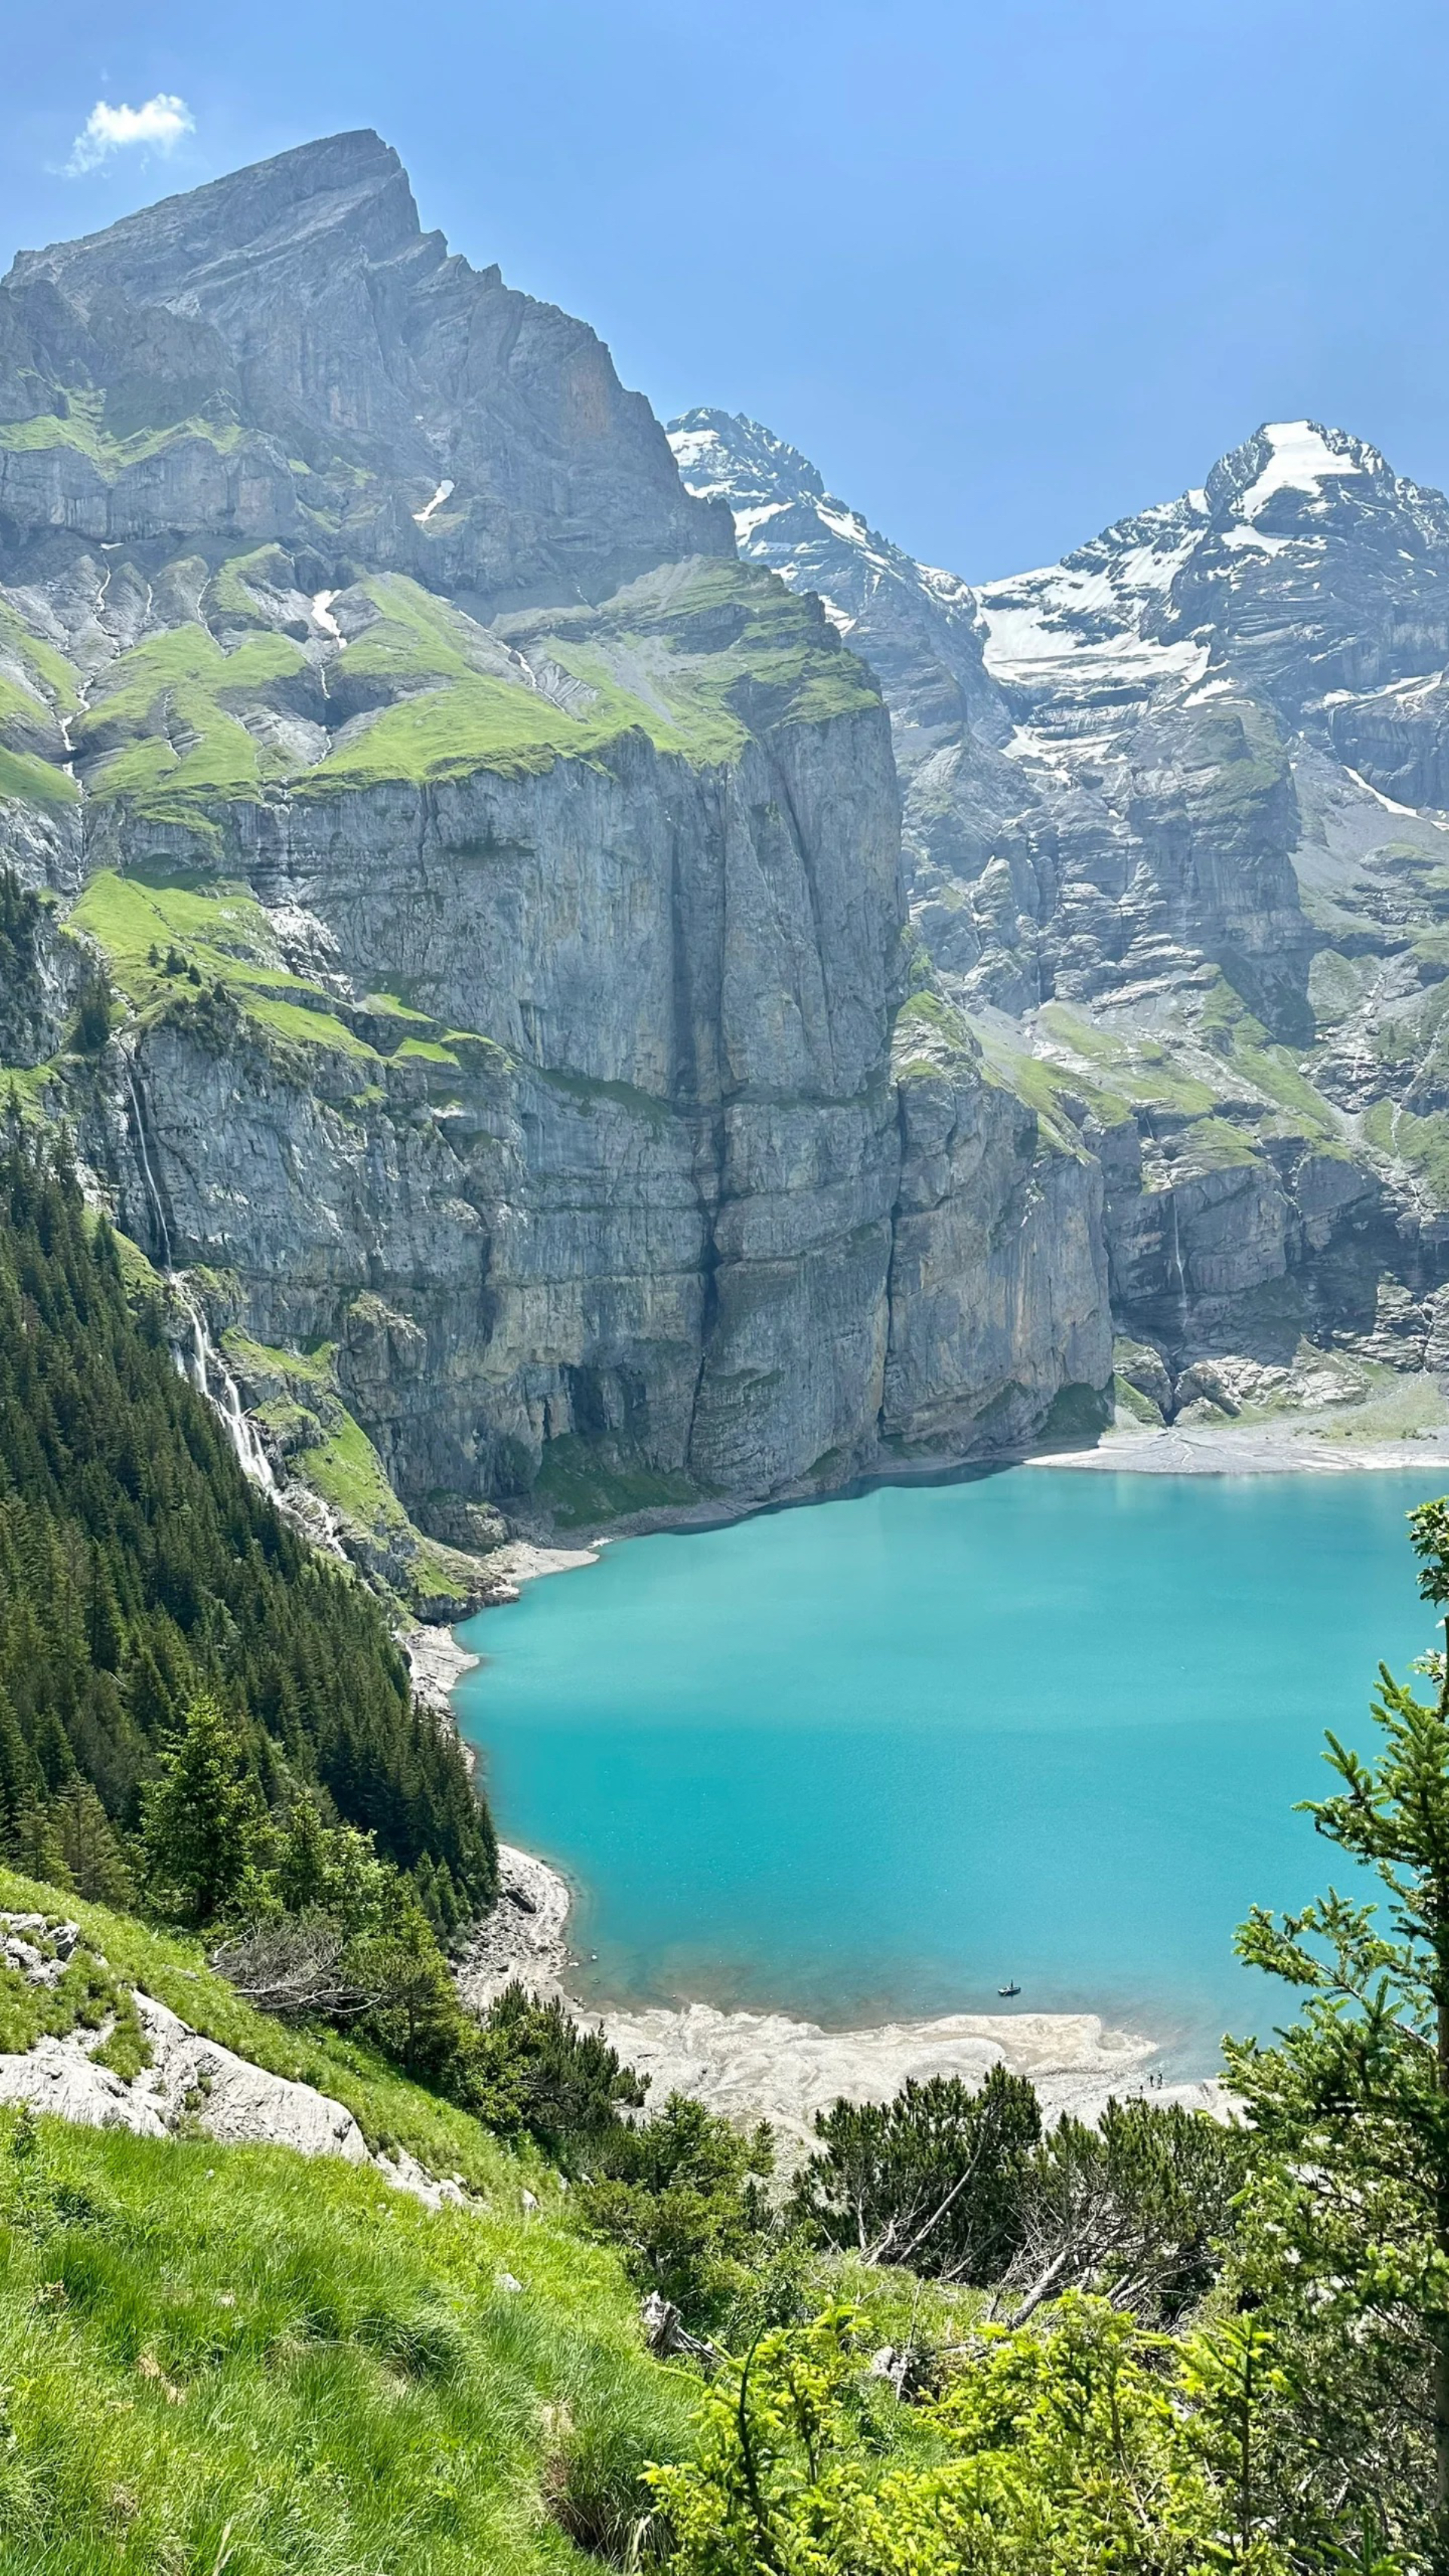 瑞士夏天的山景确实令人叹为观止，特别适合徒步旅行。当你被炎热的阳光晒得热辣辣的时候，你可以跳进清凉的